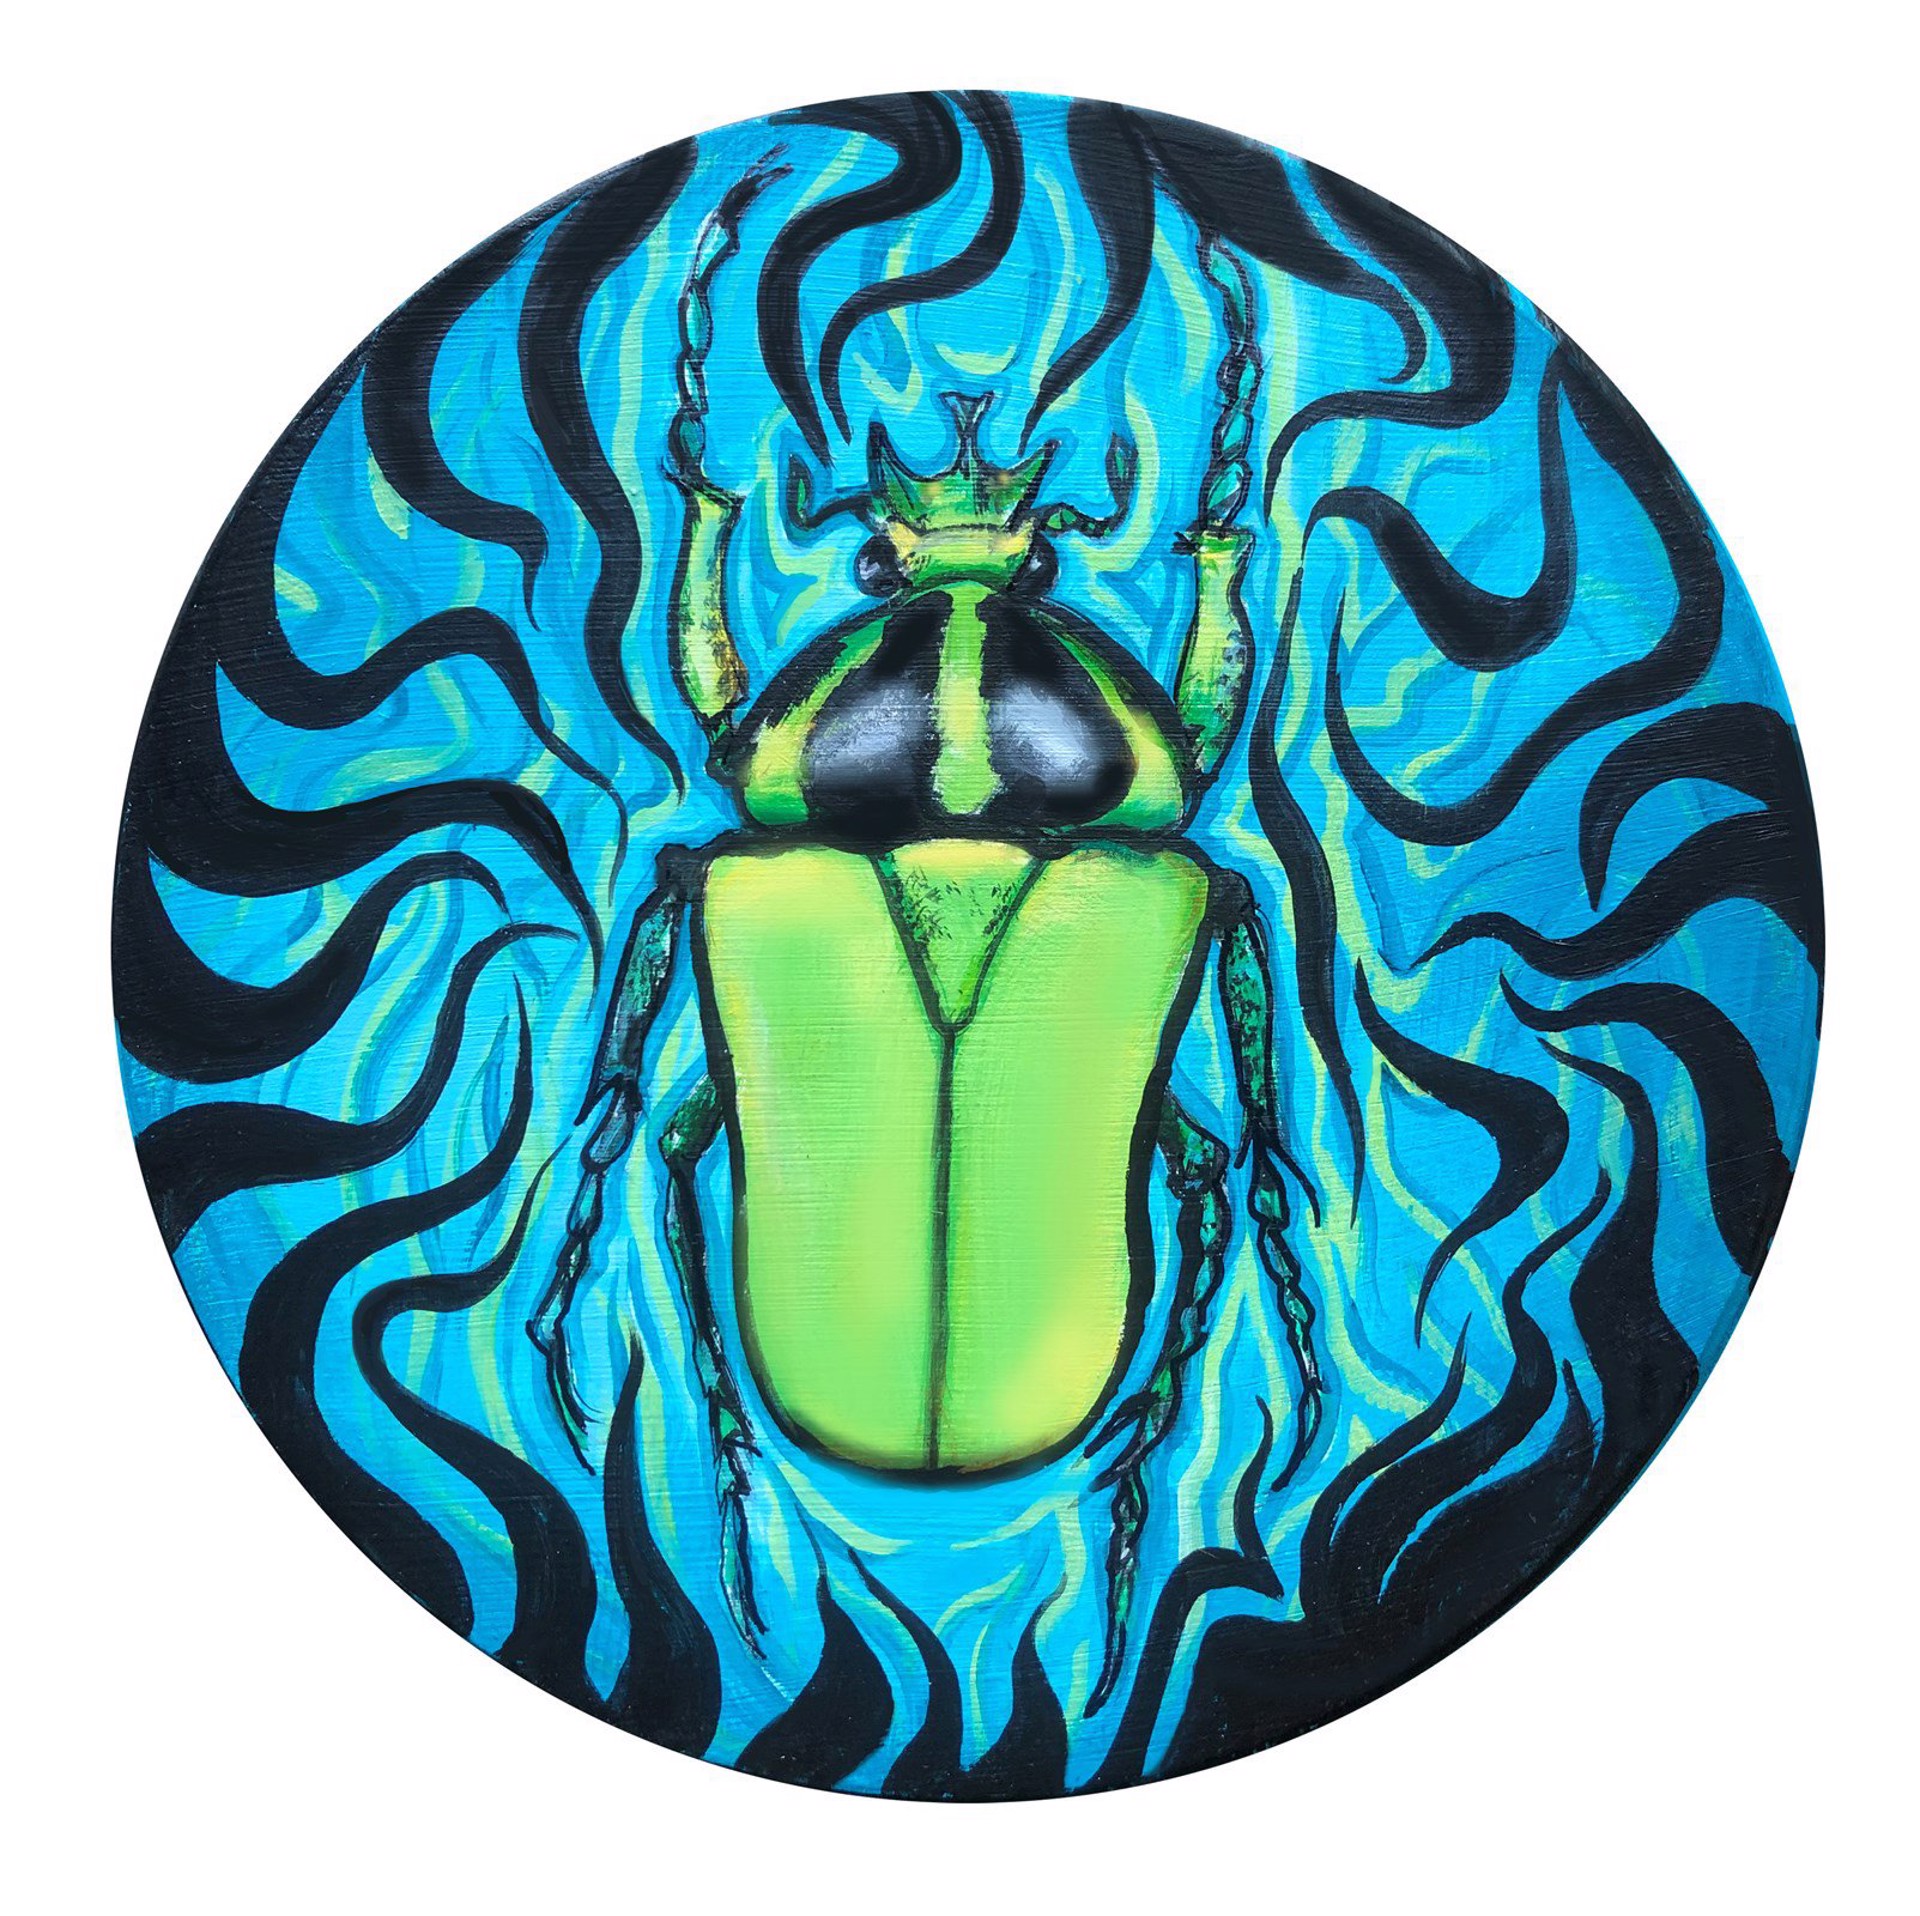 Beetle 1 by Pamela Mower-Conner